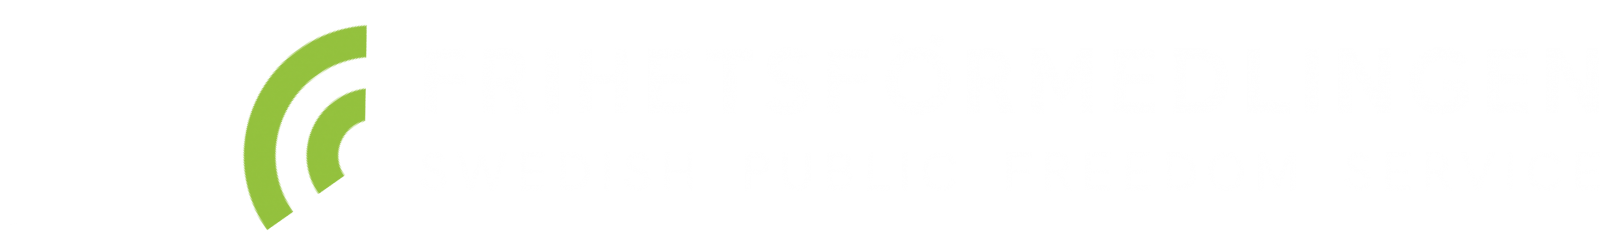 FF-logo-green-white.png